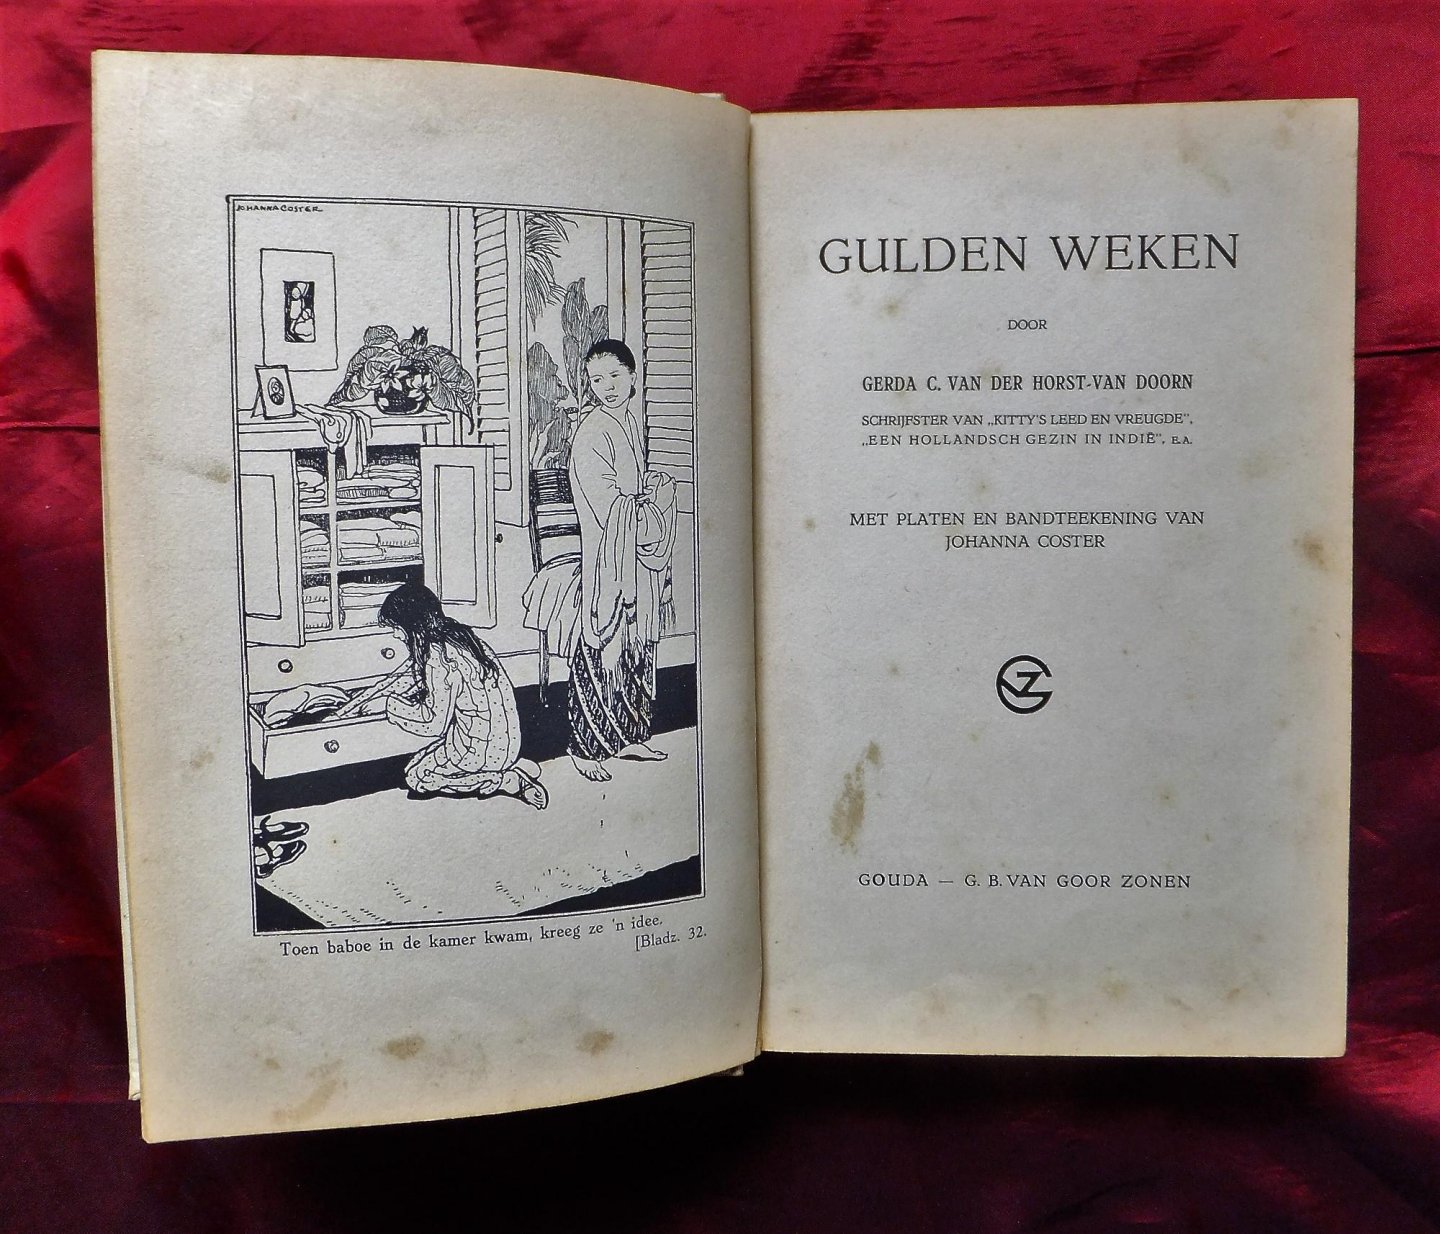 Horst-Van Doorn, Gerda C. Van Der - Gulden weken